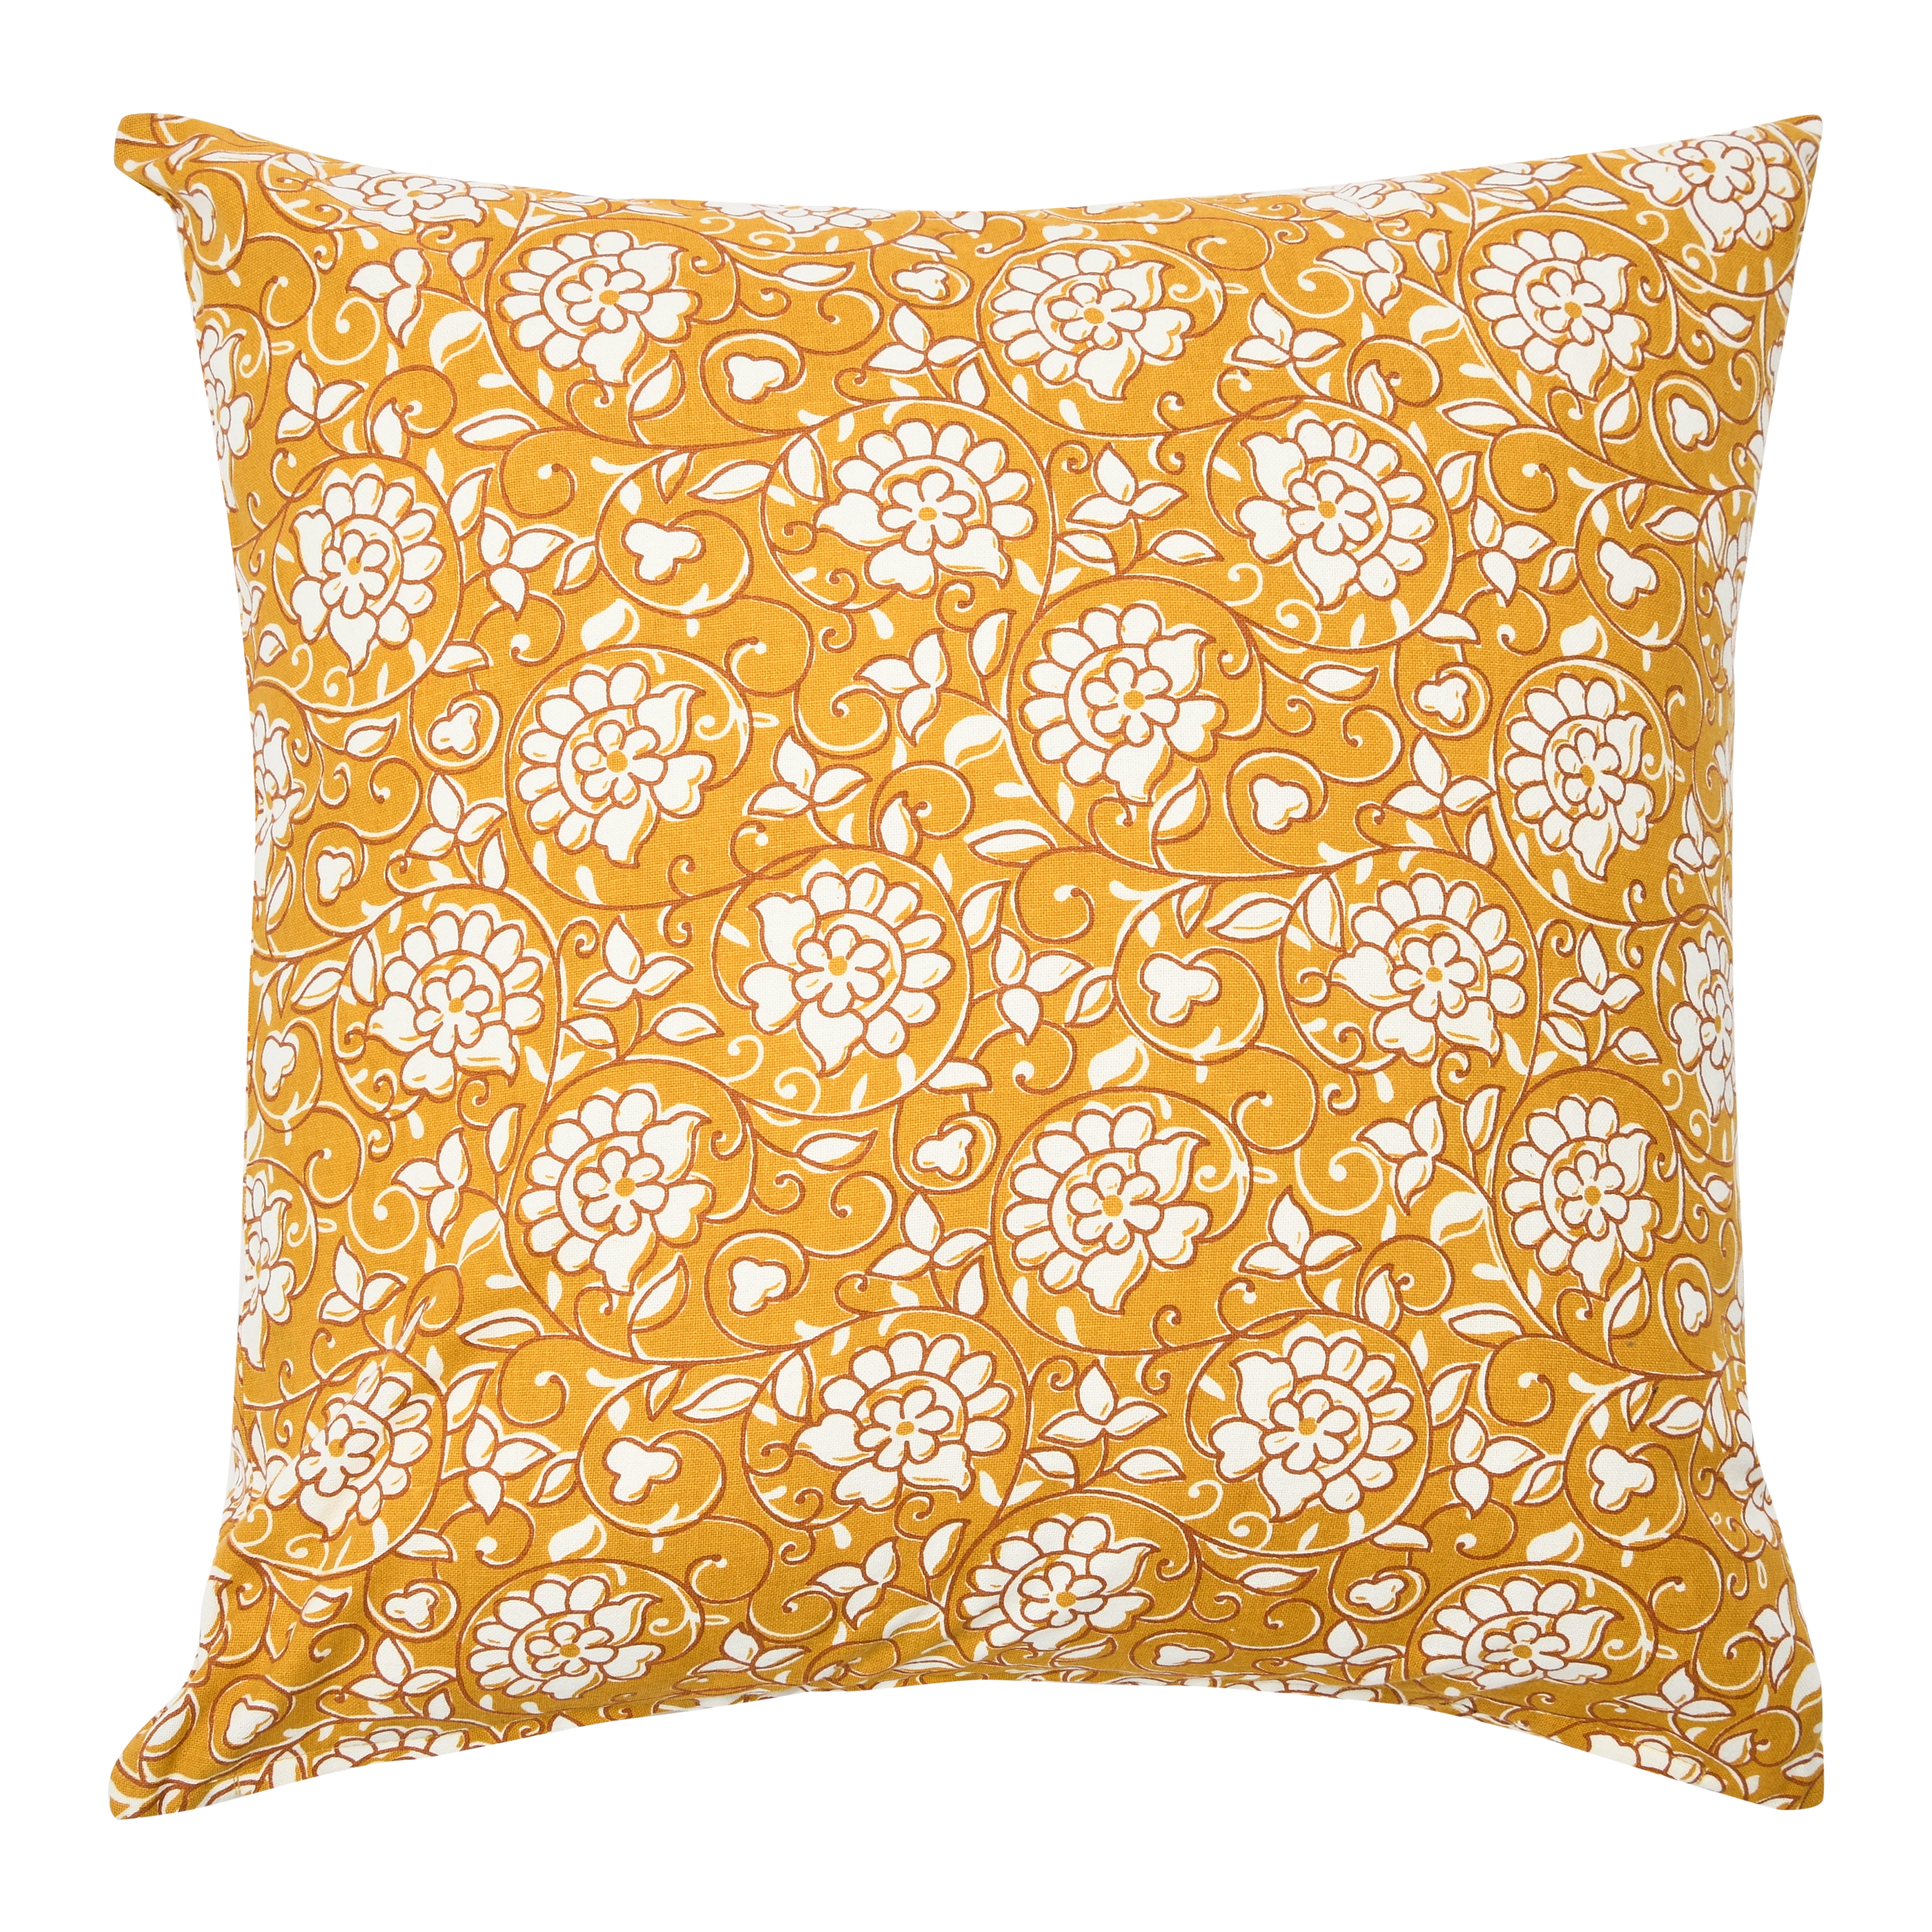 20" Square Floral Paisley Cotton Pillow - Image 0